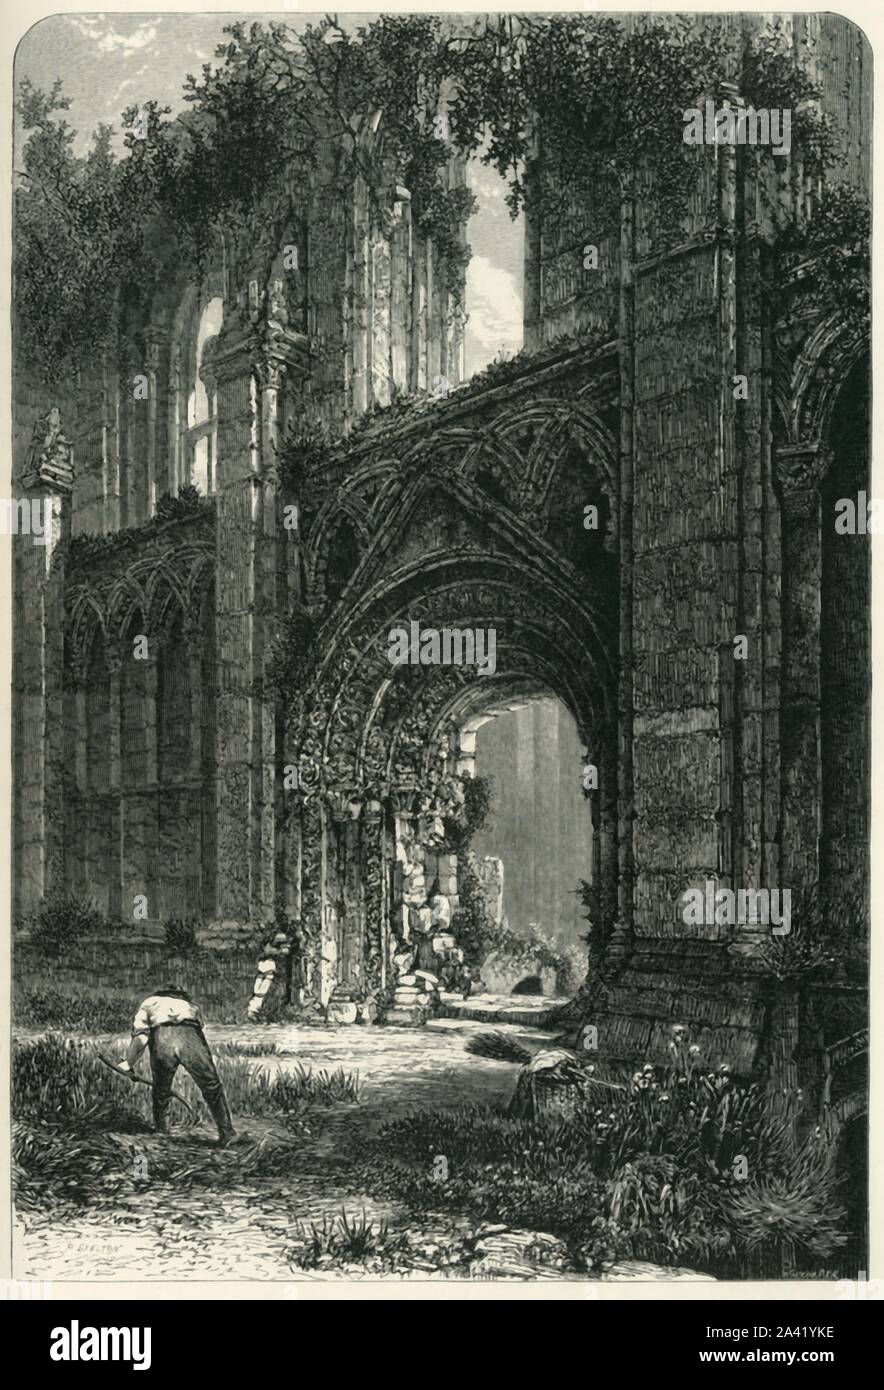 "Abbazia di Glastonbury', C1870. Abbazia di Glastonbury, ricostruita dopo un incendio nel 1184 venne dal XIV secolo uno dei più ricchi e potenti monasteri in Inghilterra, associato con la leggenda di Re Artù. L'abbazia fu soppresso durante la dissoluzione dei monasteri sotto il re Enrico VIII e l'ultimo Abate Richard Merlano è stato appeso, disegnato e squartato come un traditore su Glastonbury Tor in 1539. Dal pittoresco Europa - Le Isole Britanniche, Vol. Io". [Cassell Petter &AMP; Galpin, Londra, c1870] Foto Stock